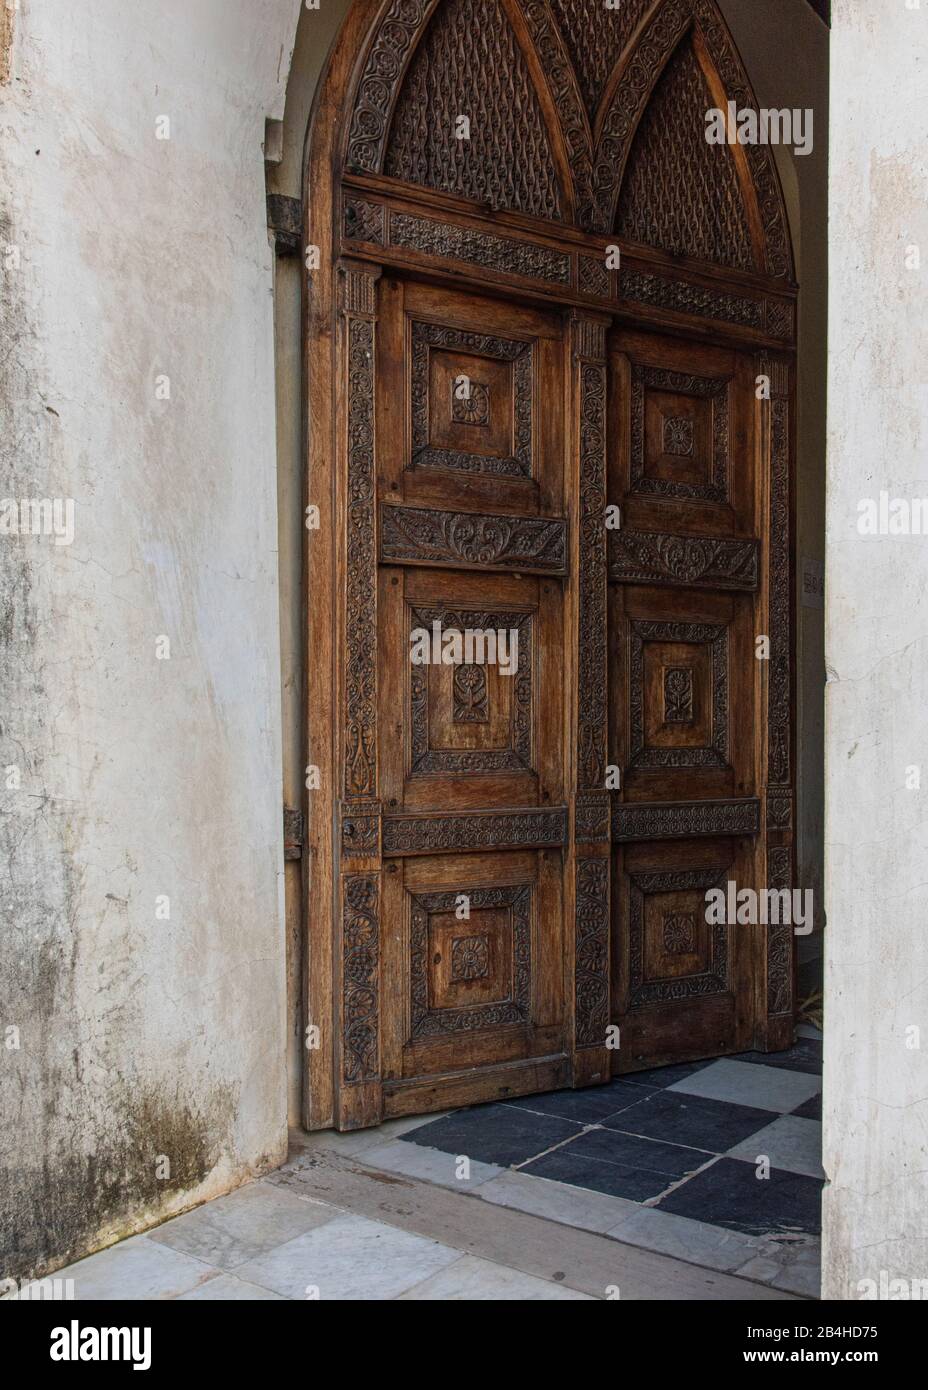 Tanzania, Isola di Zanzibar: Chiesa anglicana in Stone Town, costruita sul sito del vecchio mercato degli schiavi, come memoriale contro il commercio degli schiavi. Porta di legno, ingresso alla chiesa. Foto Stock